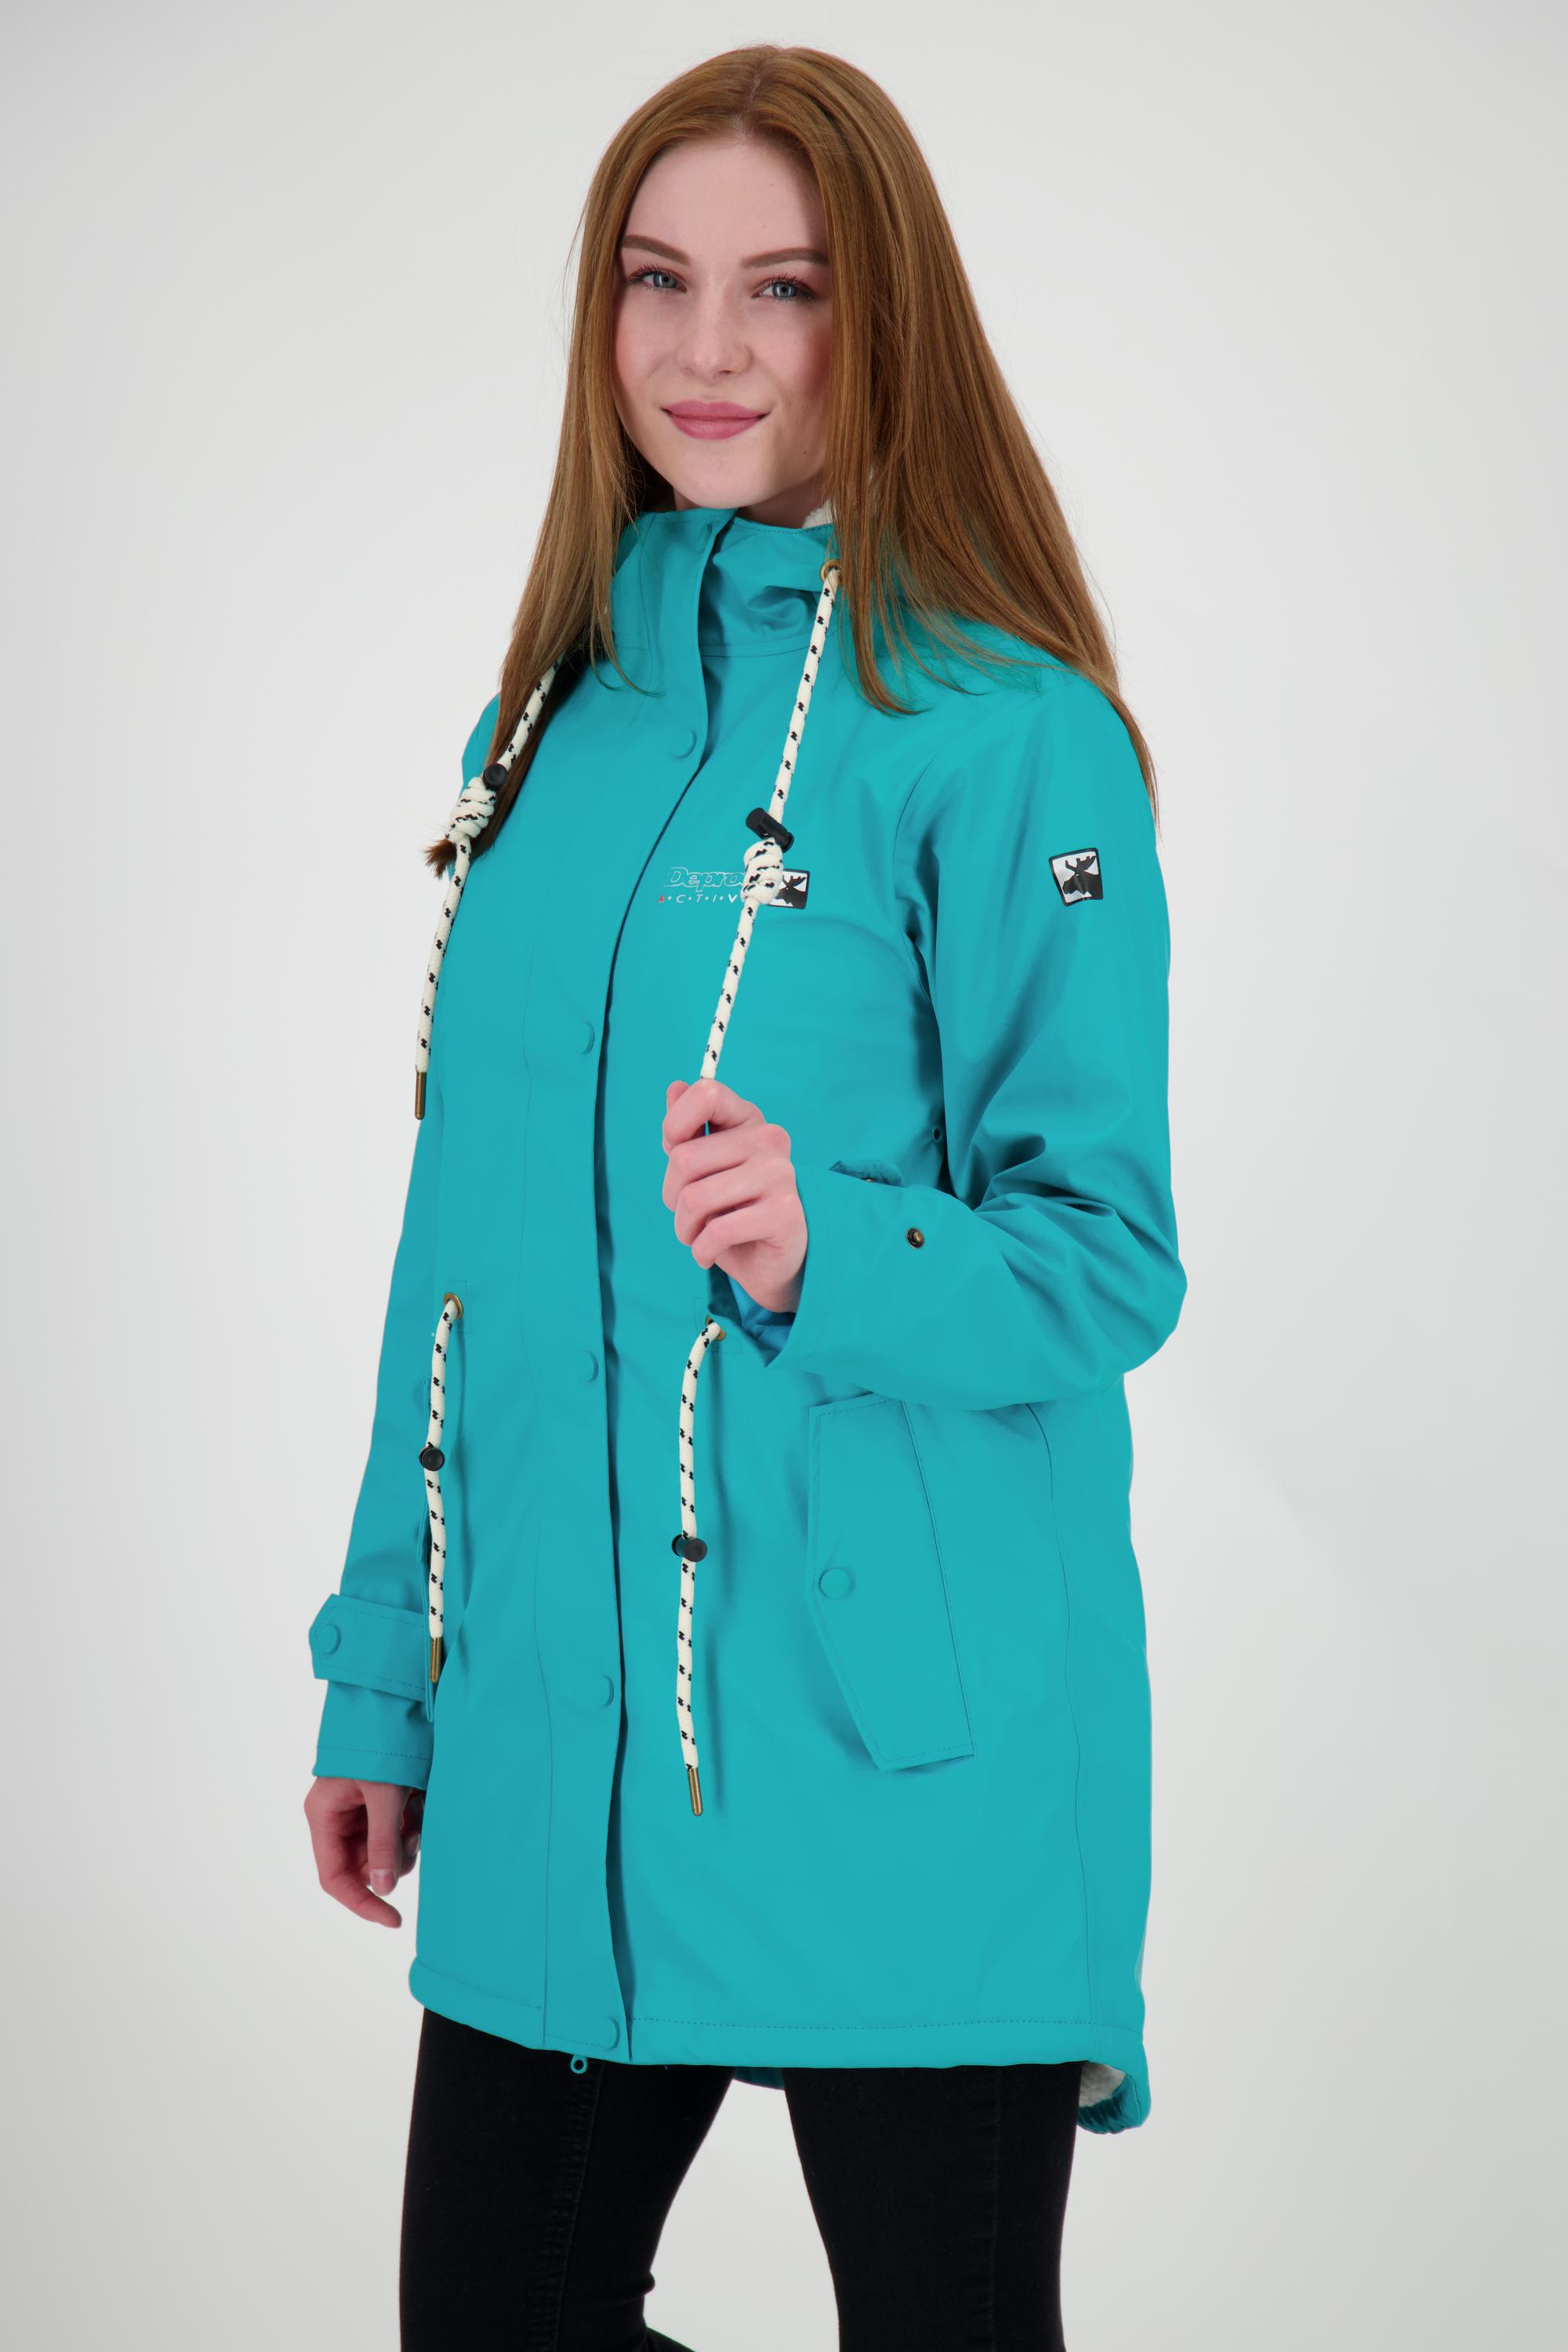 DEPROC active WOMEN Regenjacke Damen von ELLESMERE SportScheck kaufen Online Friesennerz Shop turquoise im